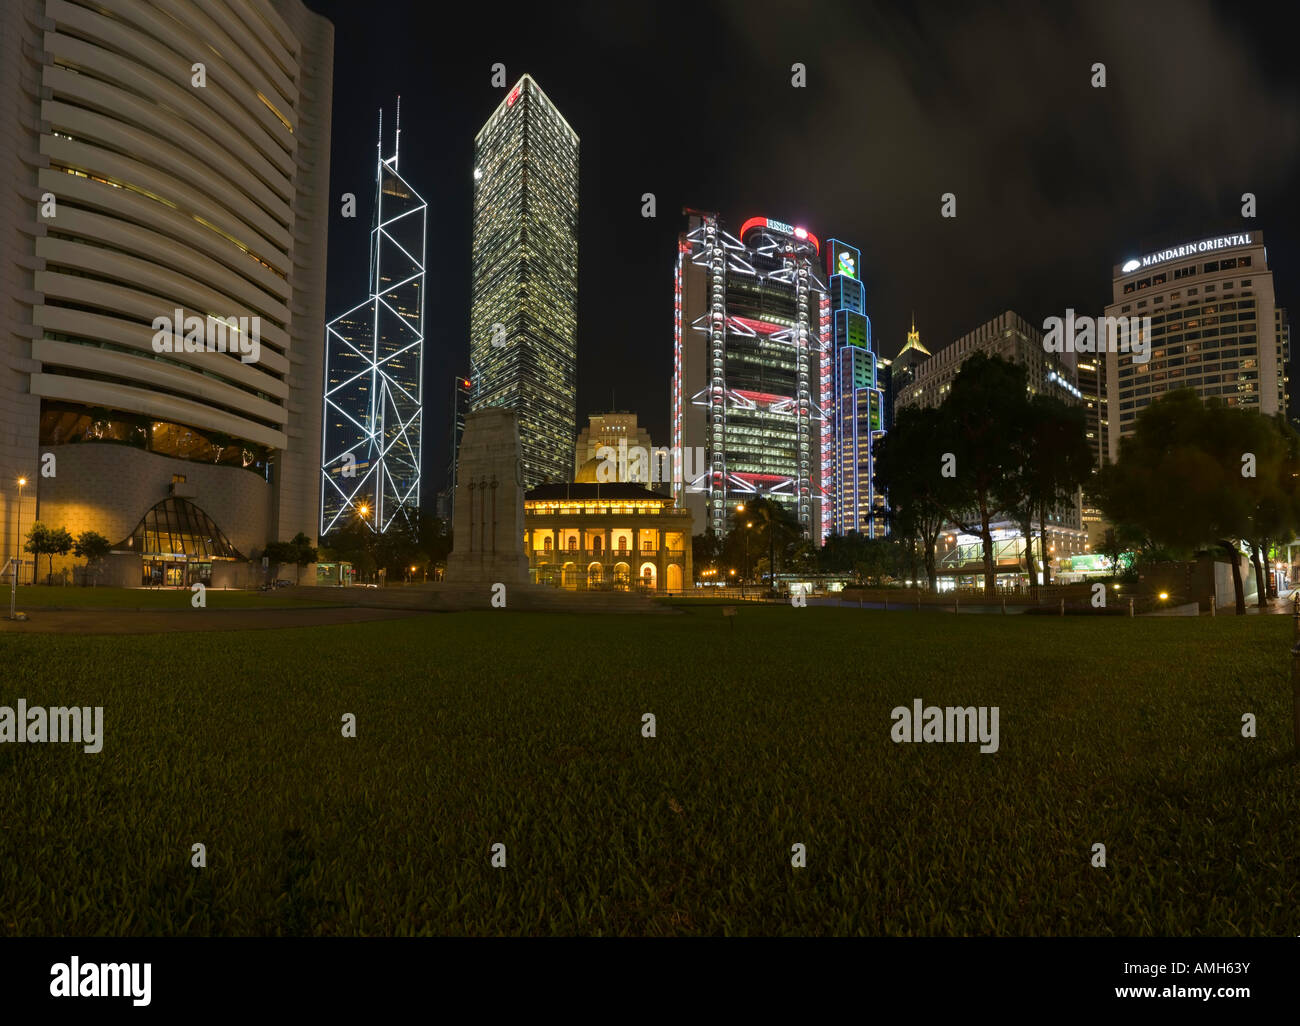 Un panorama nocturno del área que rodea el cenotafio y la Plaza de la estatua, Hong Kong, China. Foto de stock